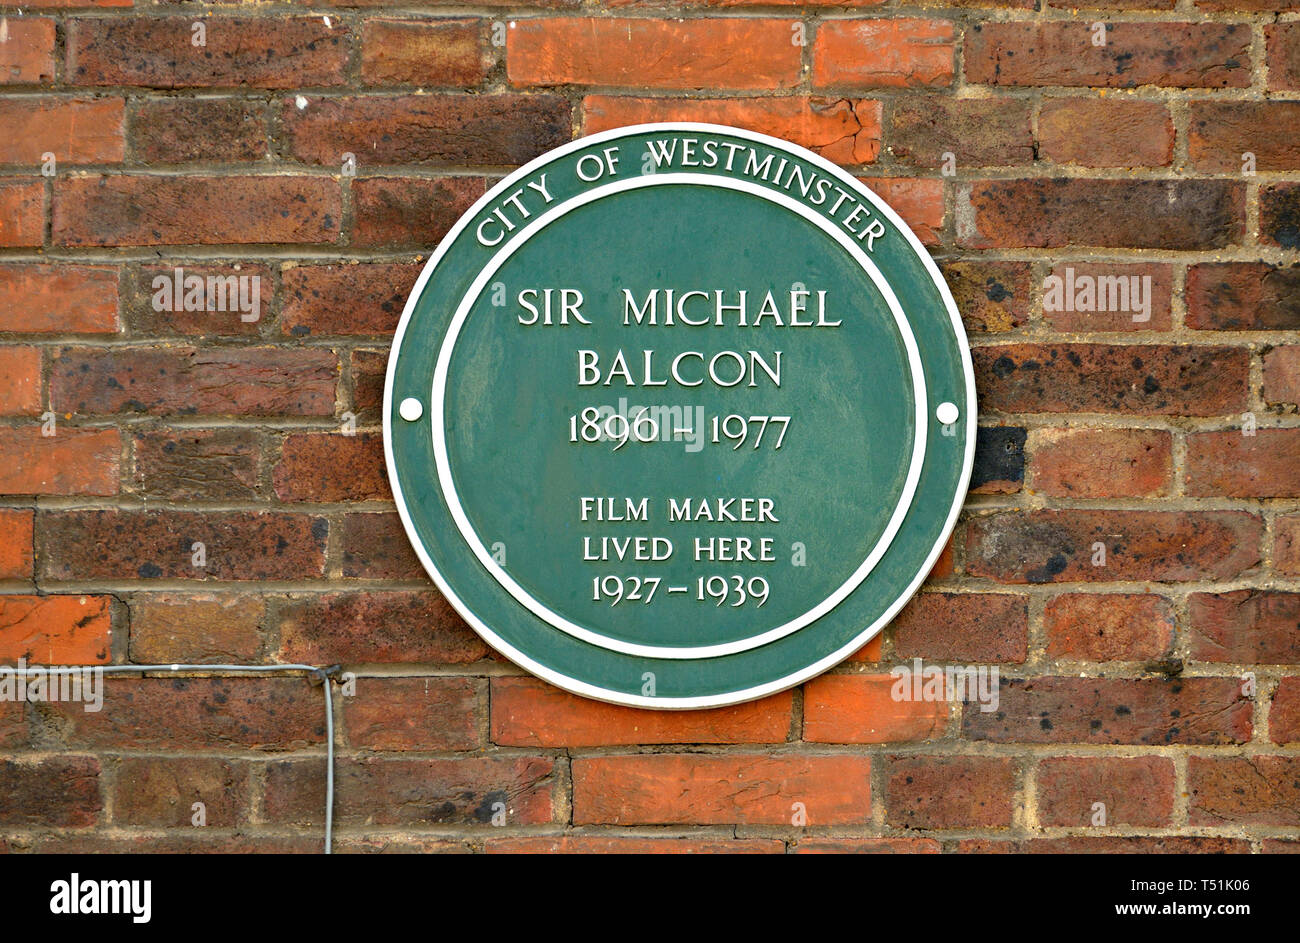 Londres, Inglaterra, Reino Unido. Placa Verde conmemorativo: Sir Michael Balcon (1890-1977) cineasta vivió aquí, 1927-1939. 57A Tufton Street (1997) Foto de stock